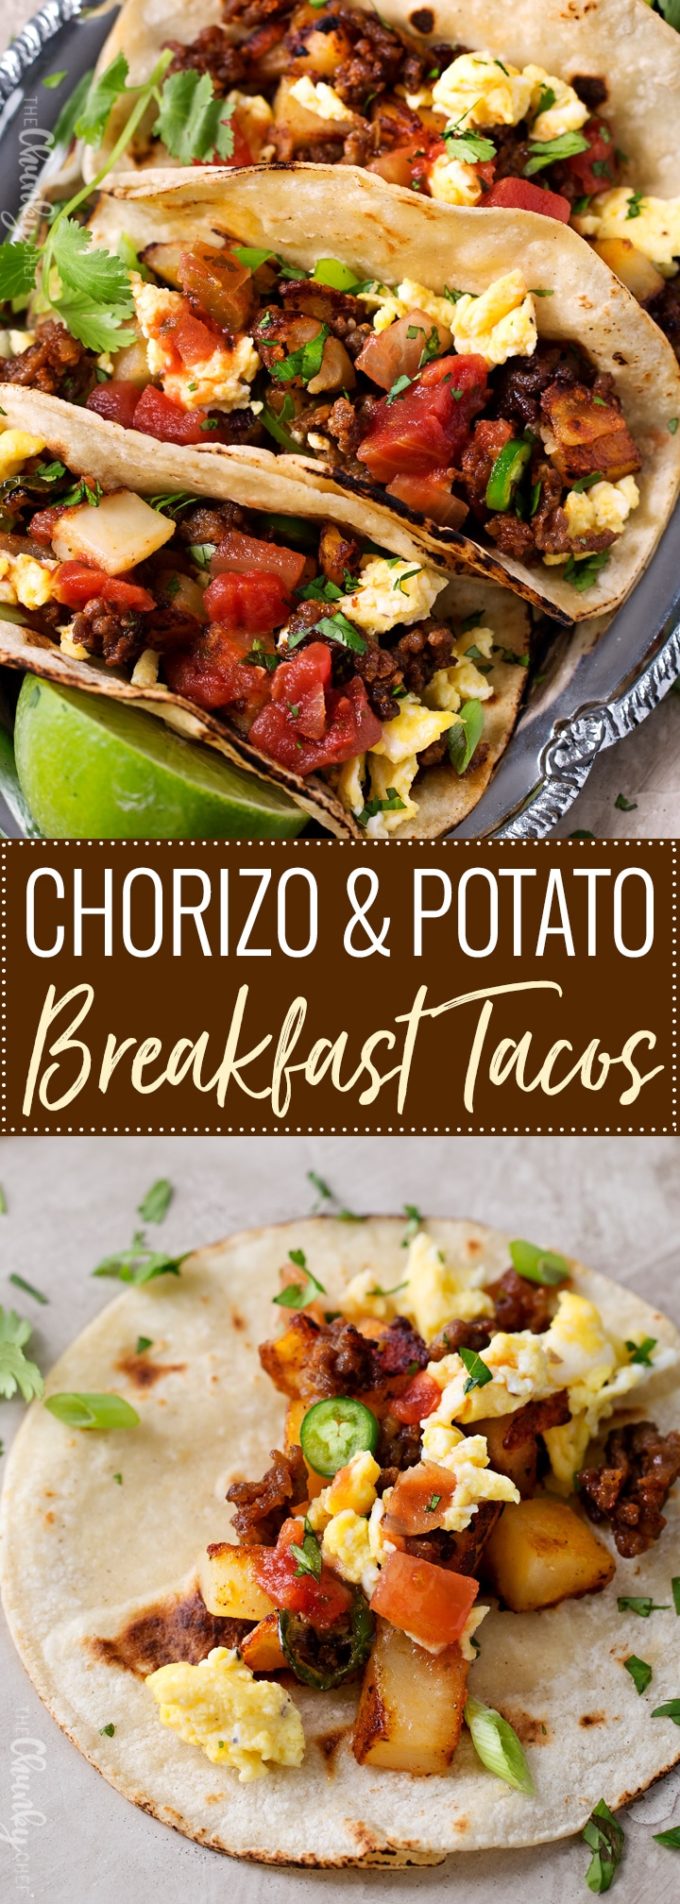 Chorizo and Potato Breakfast Tacos - The Chunky Chef